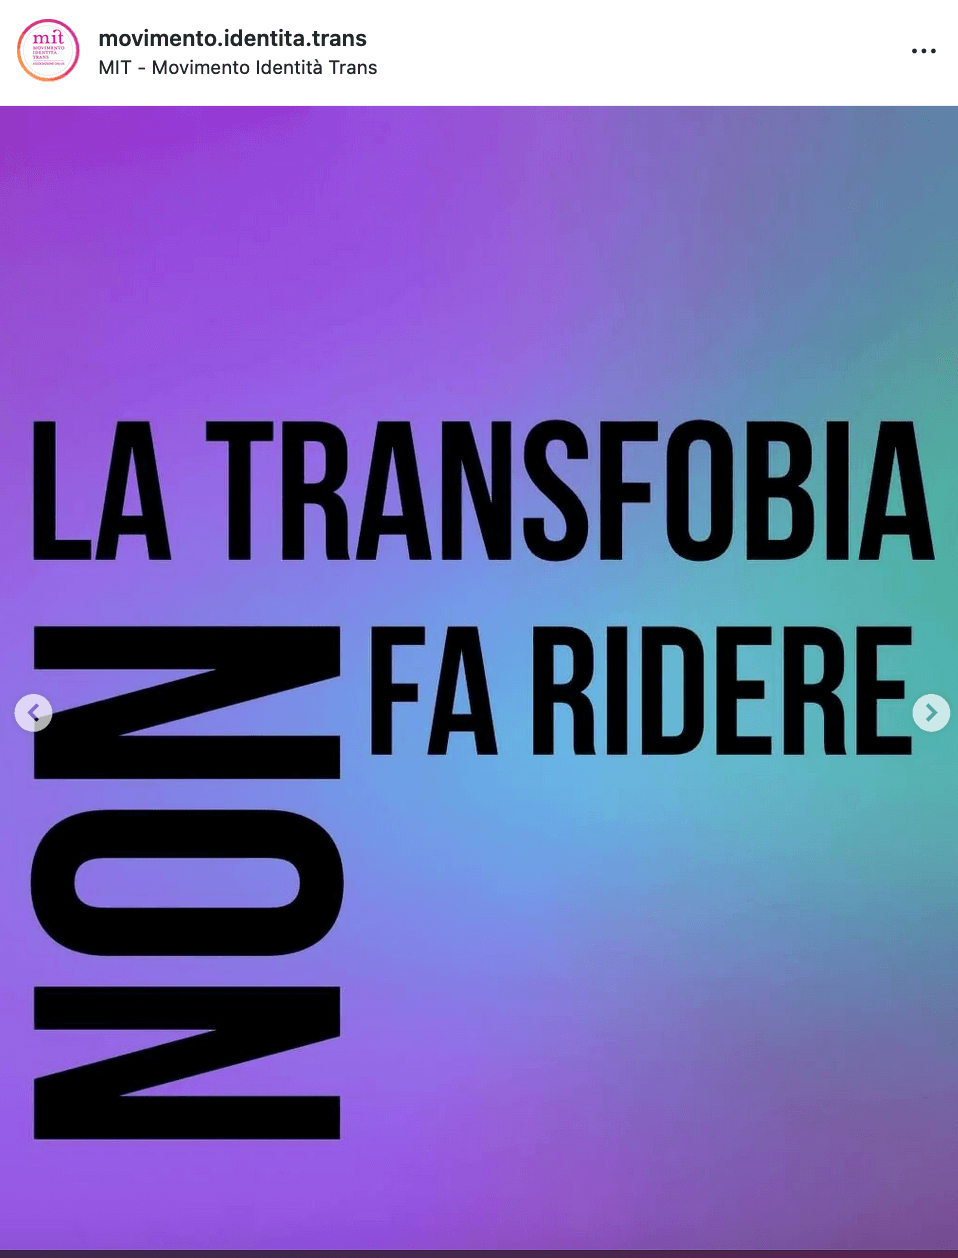 MIT- Movimento identità trans replica a Zalone